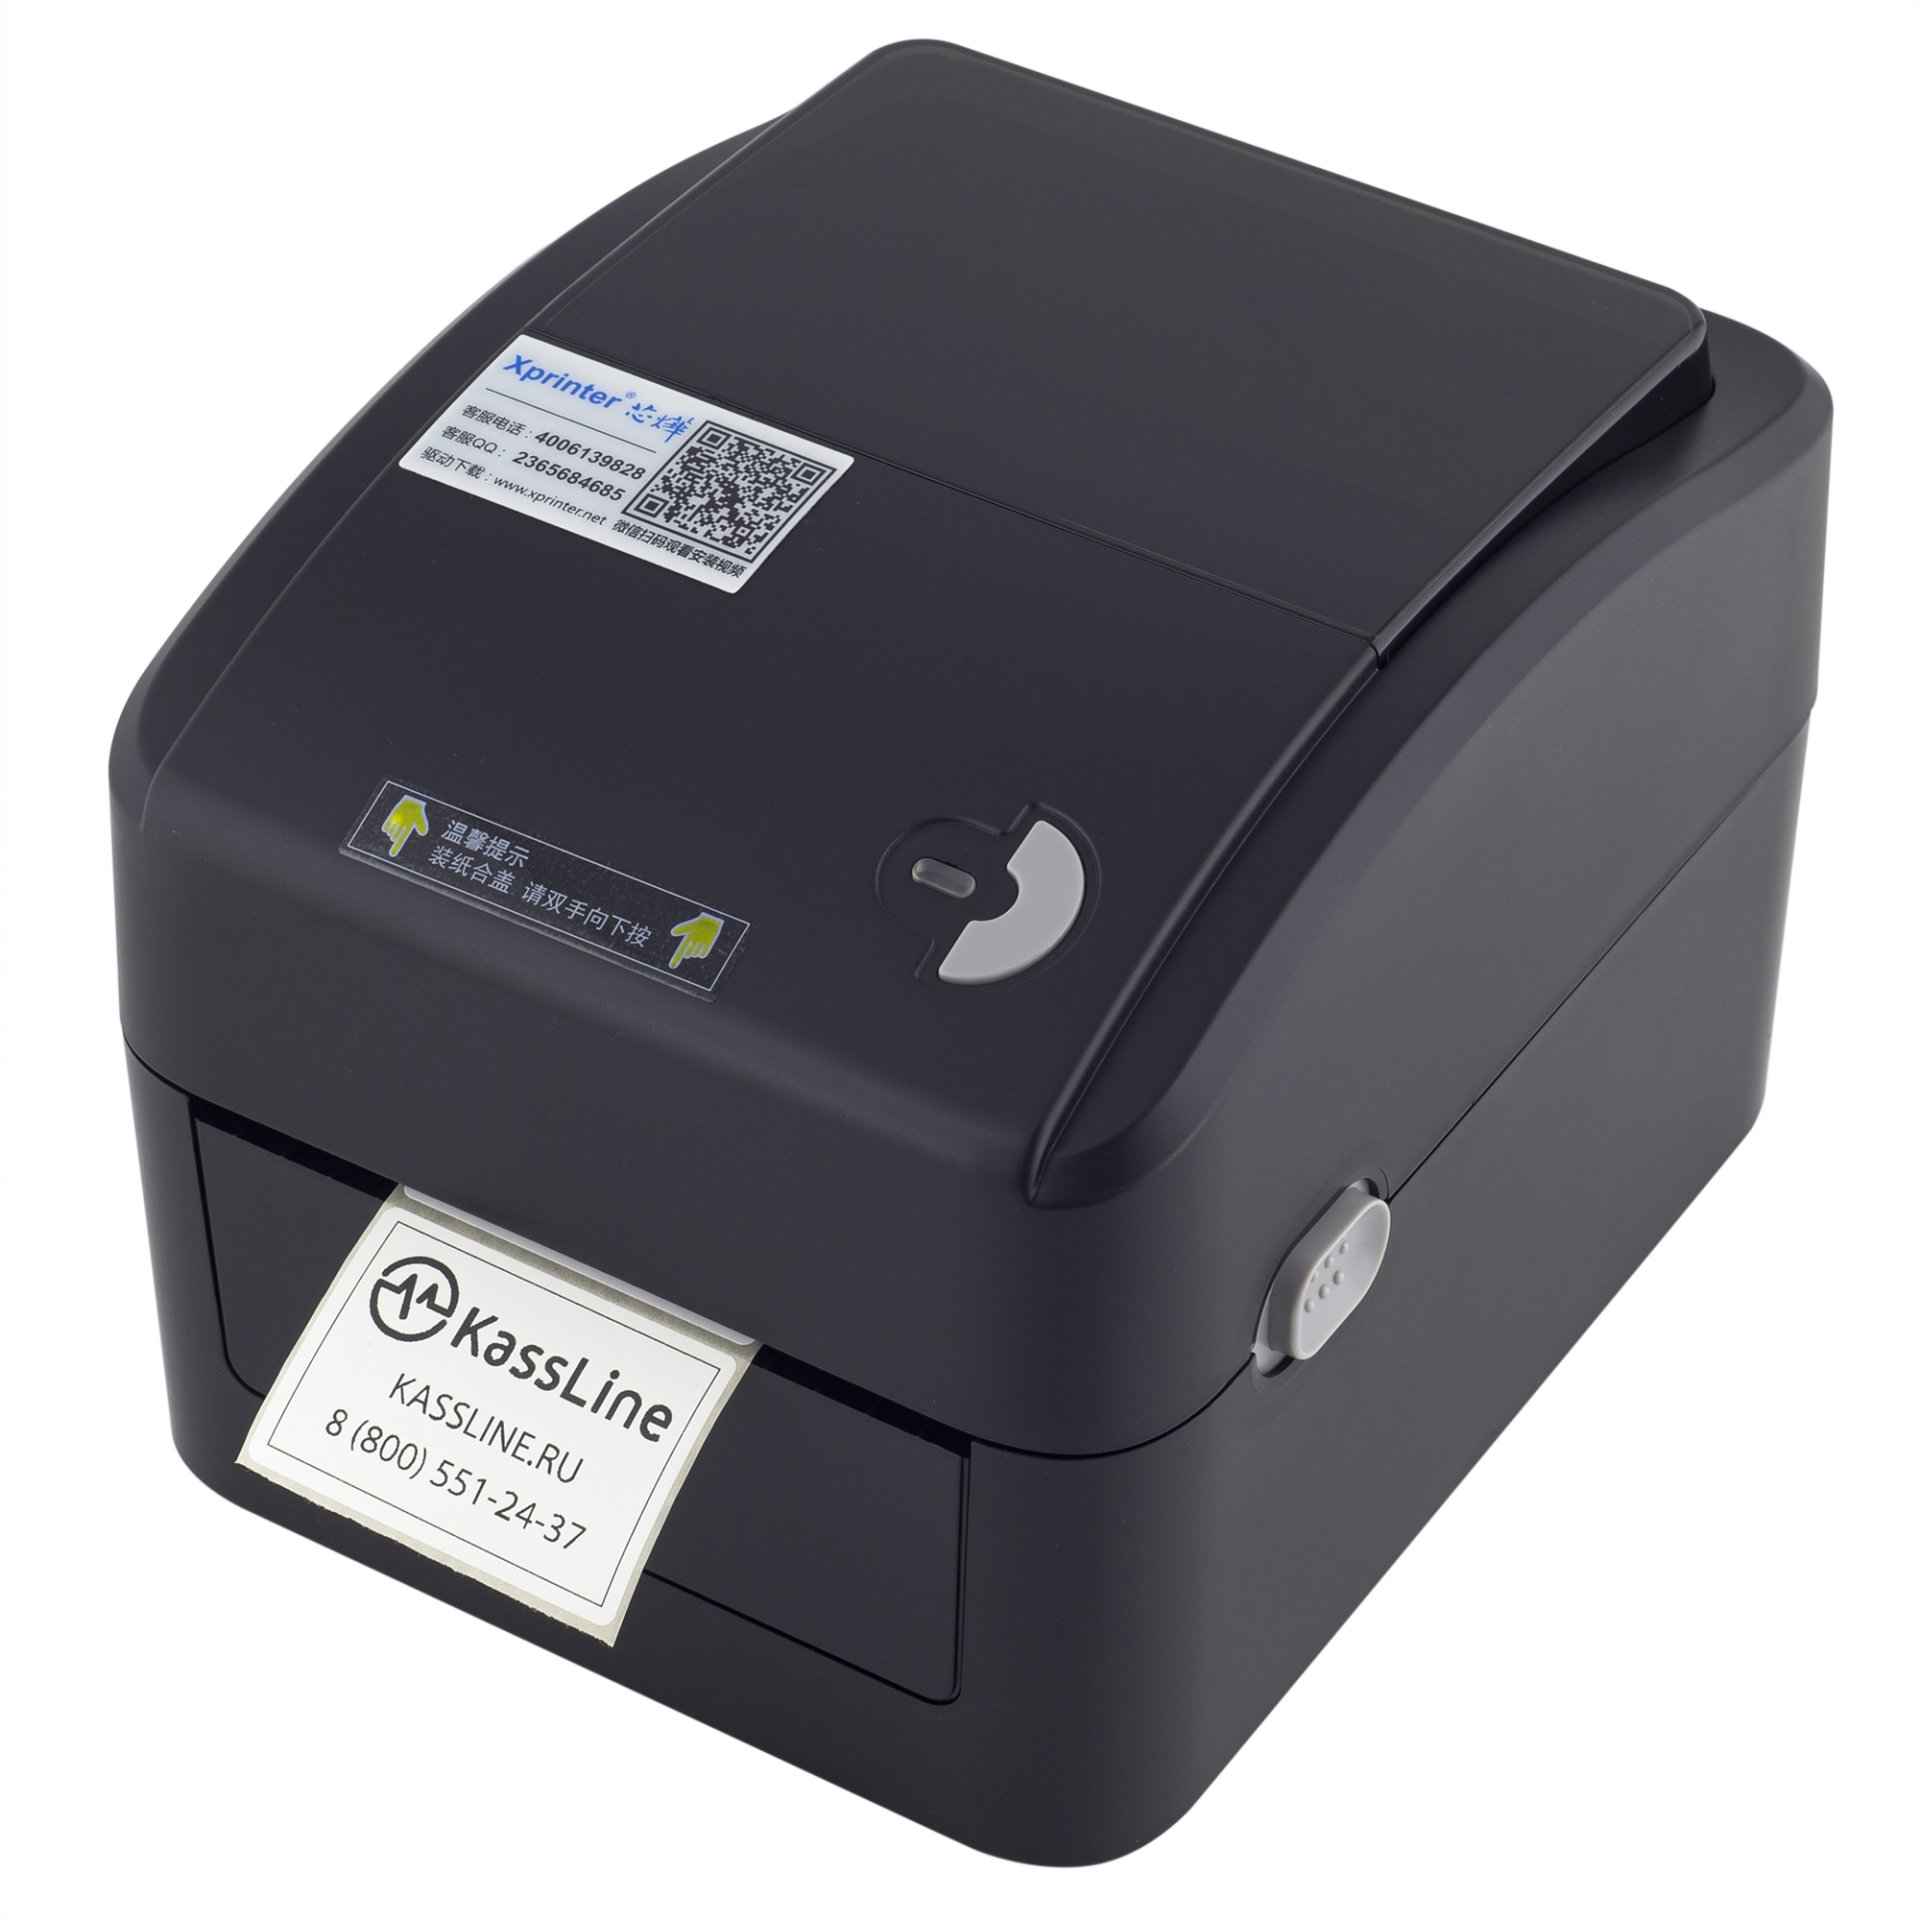 Xprinter 420b. Xprinter XP-420b. Xрrinter xр-420b. Принтер этикеток Xprinter XP-420 (USB). Этикеток xprinter xp 420b